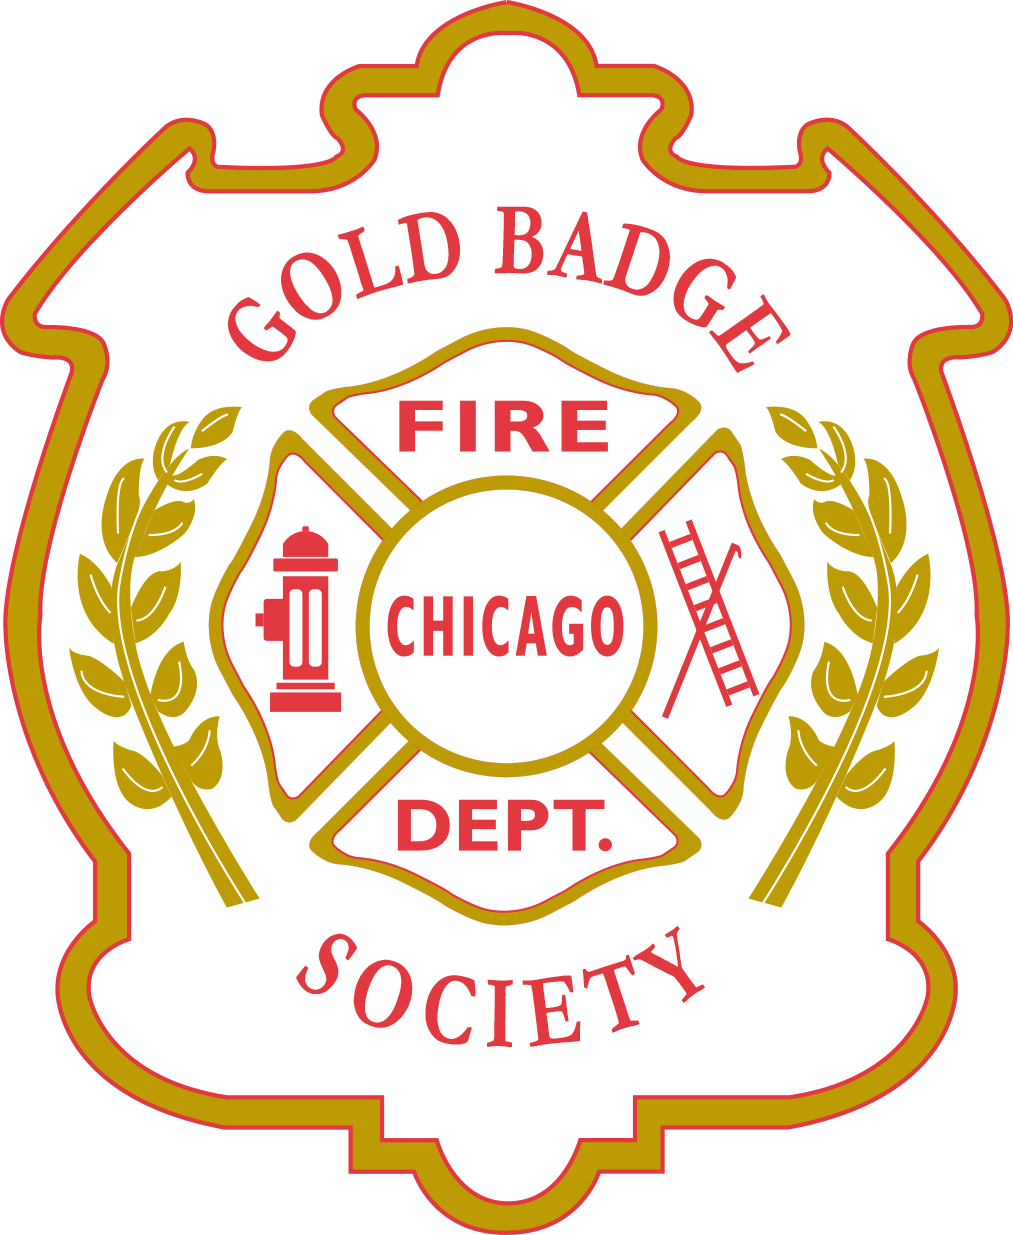 CFD Gold Badge Society